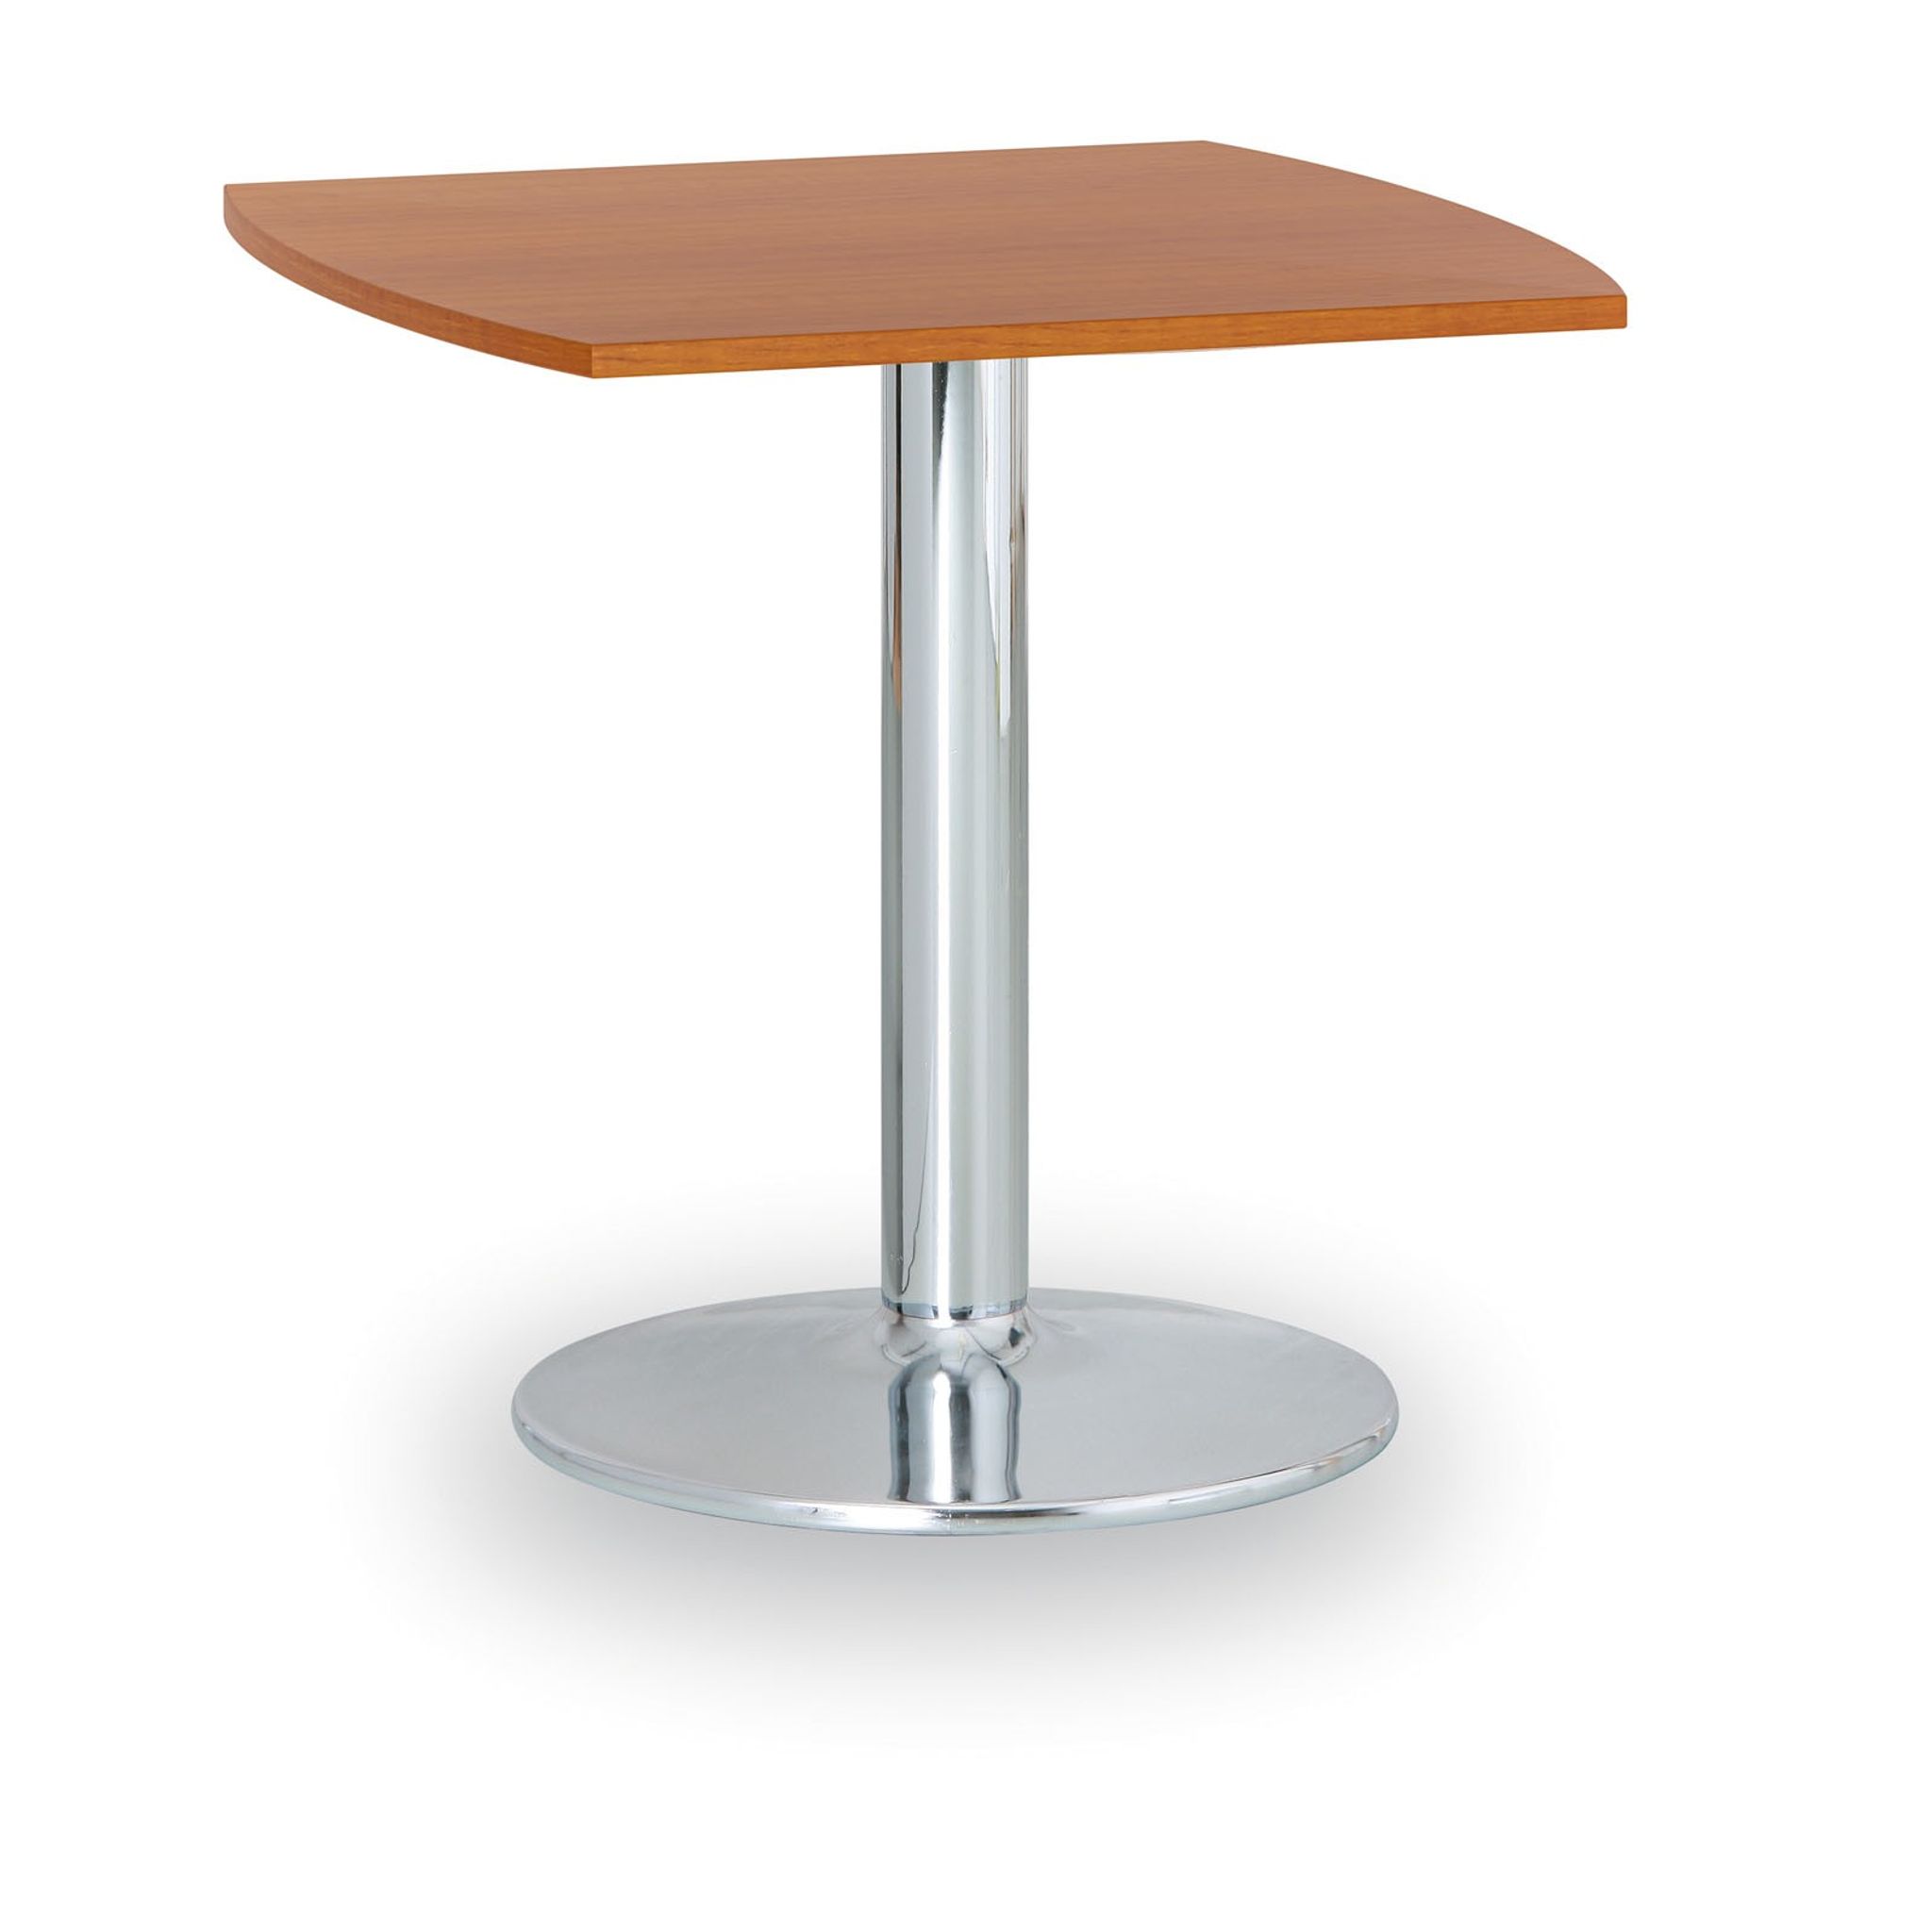 Konferenční stolek ZEUS II, 660x660 mm, chromovaná podnož, deska třešeň